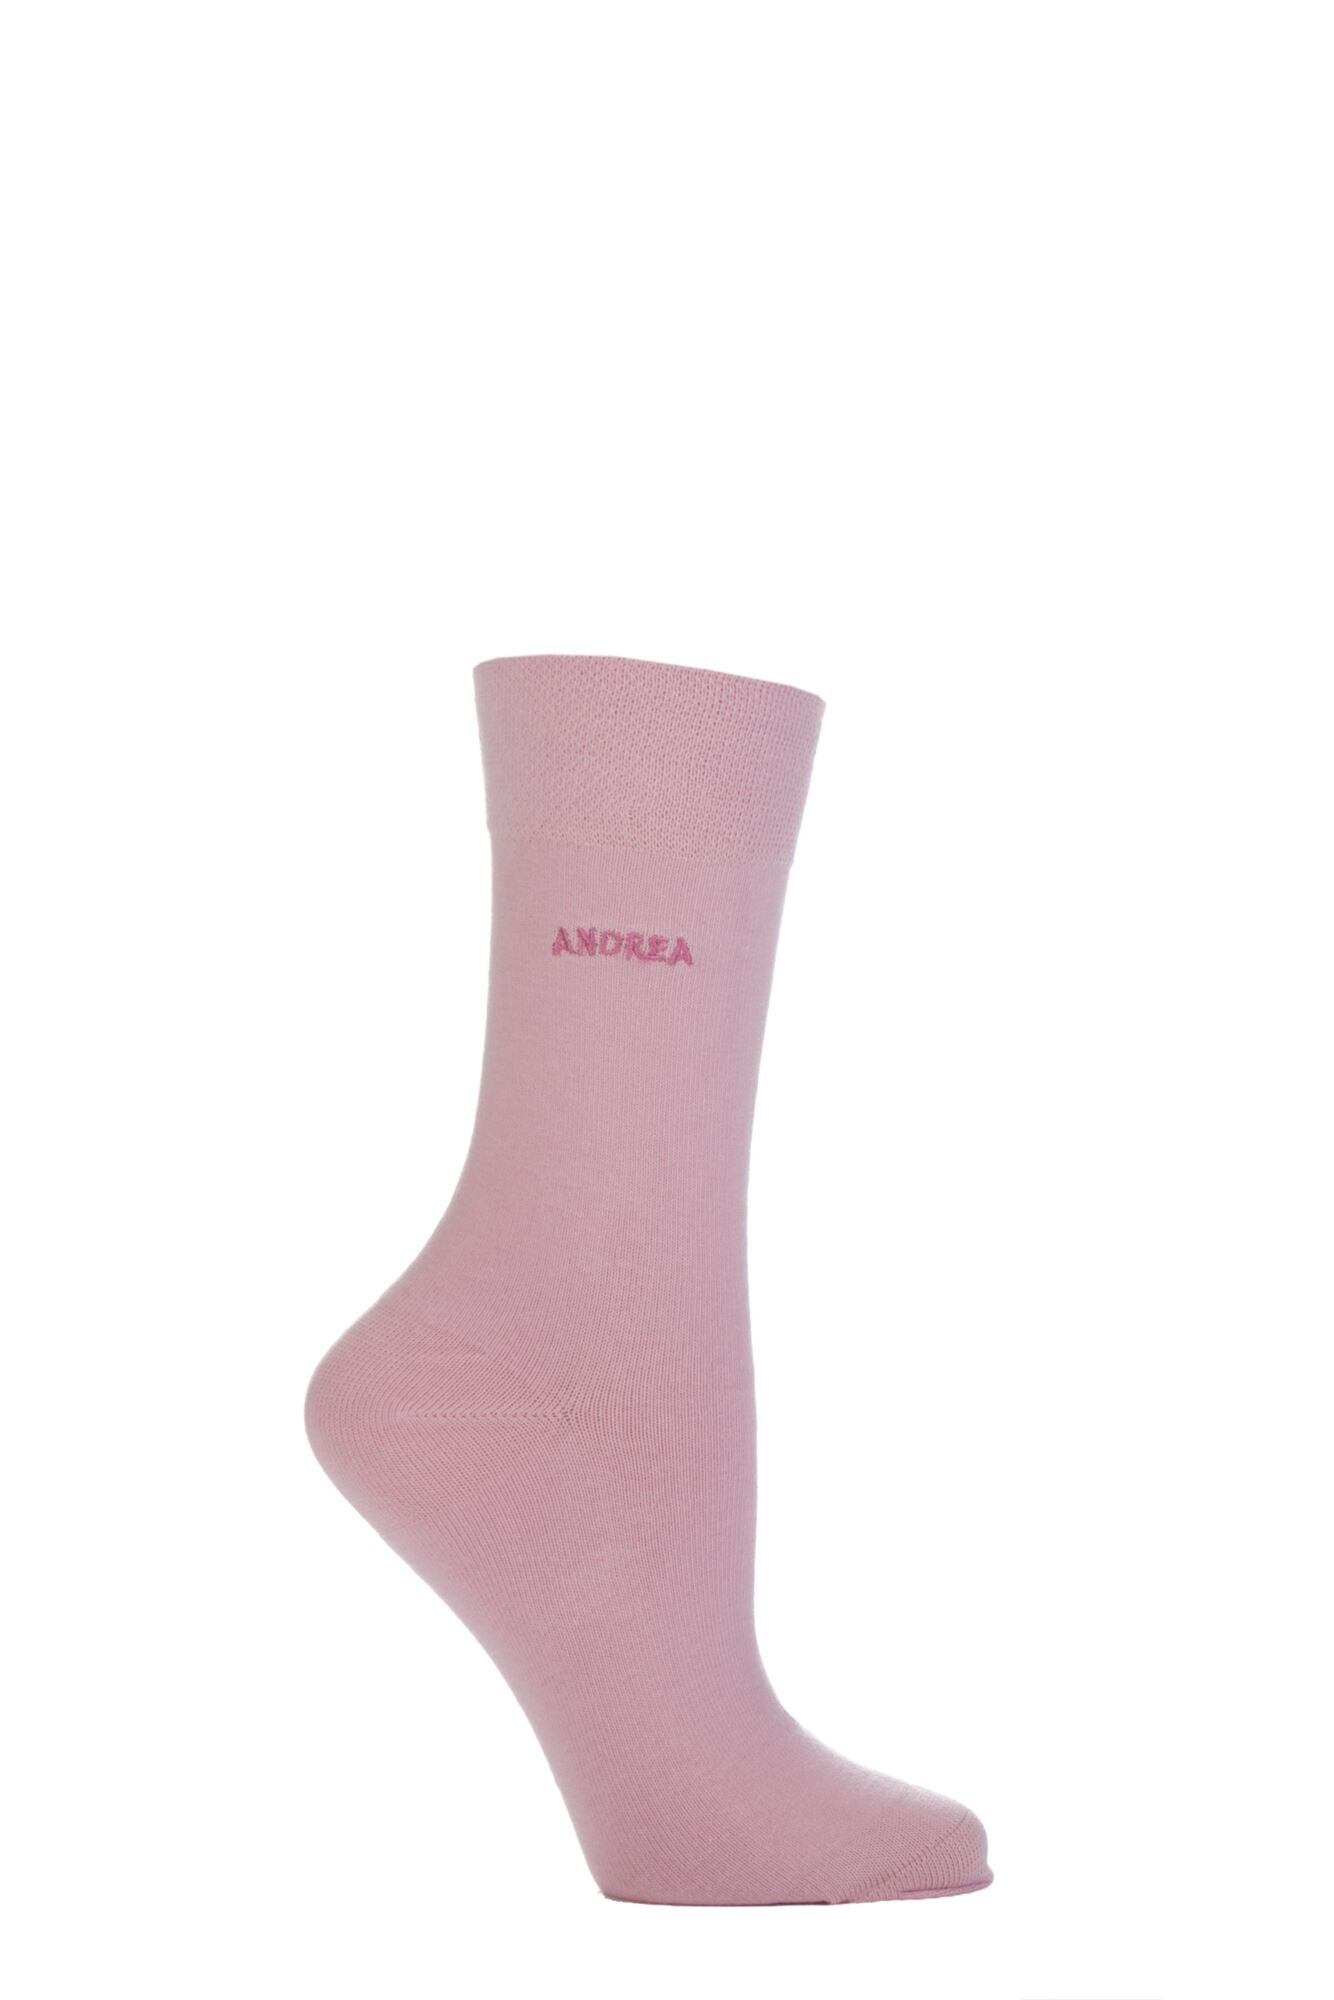 1 Pair Individual Names Pink Embroidered Socks Ladies - SOCKSHOP